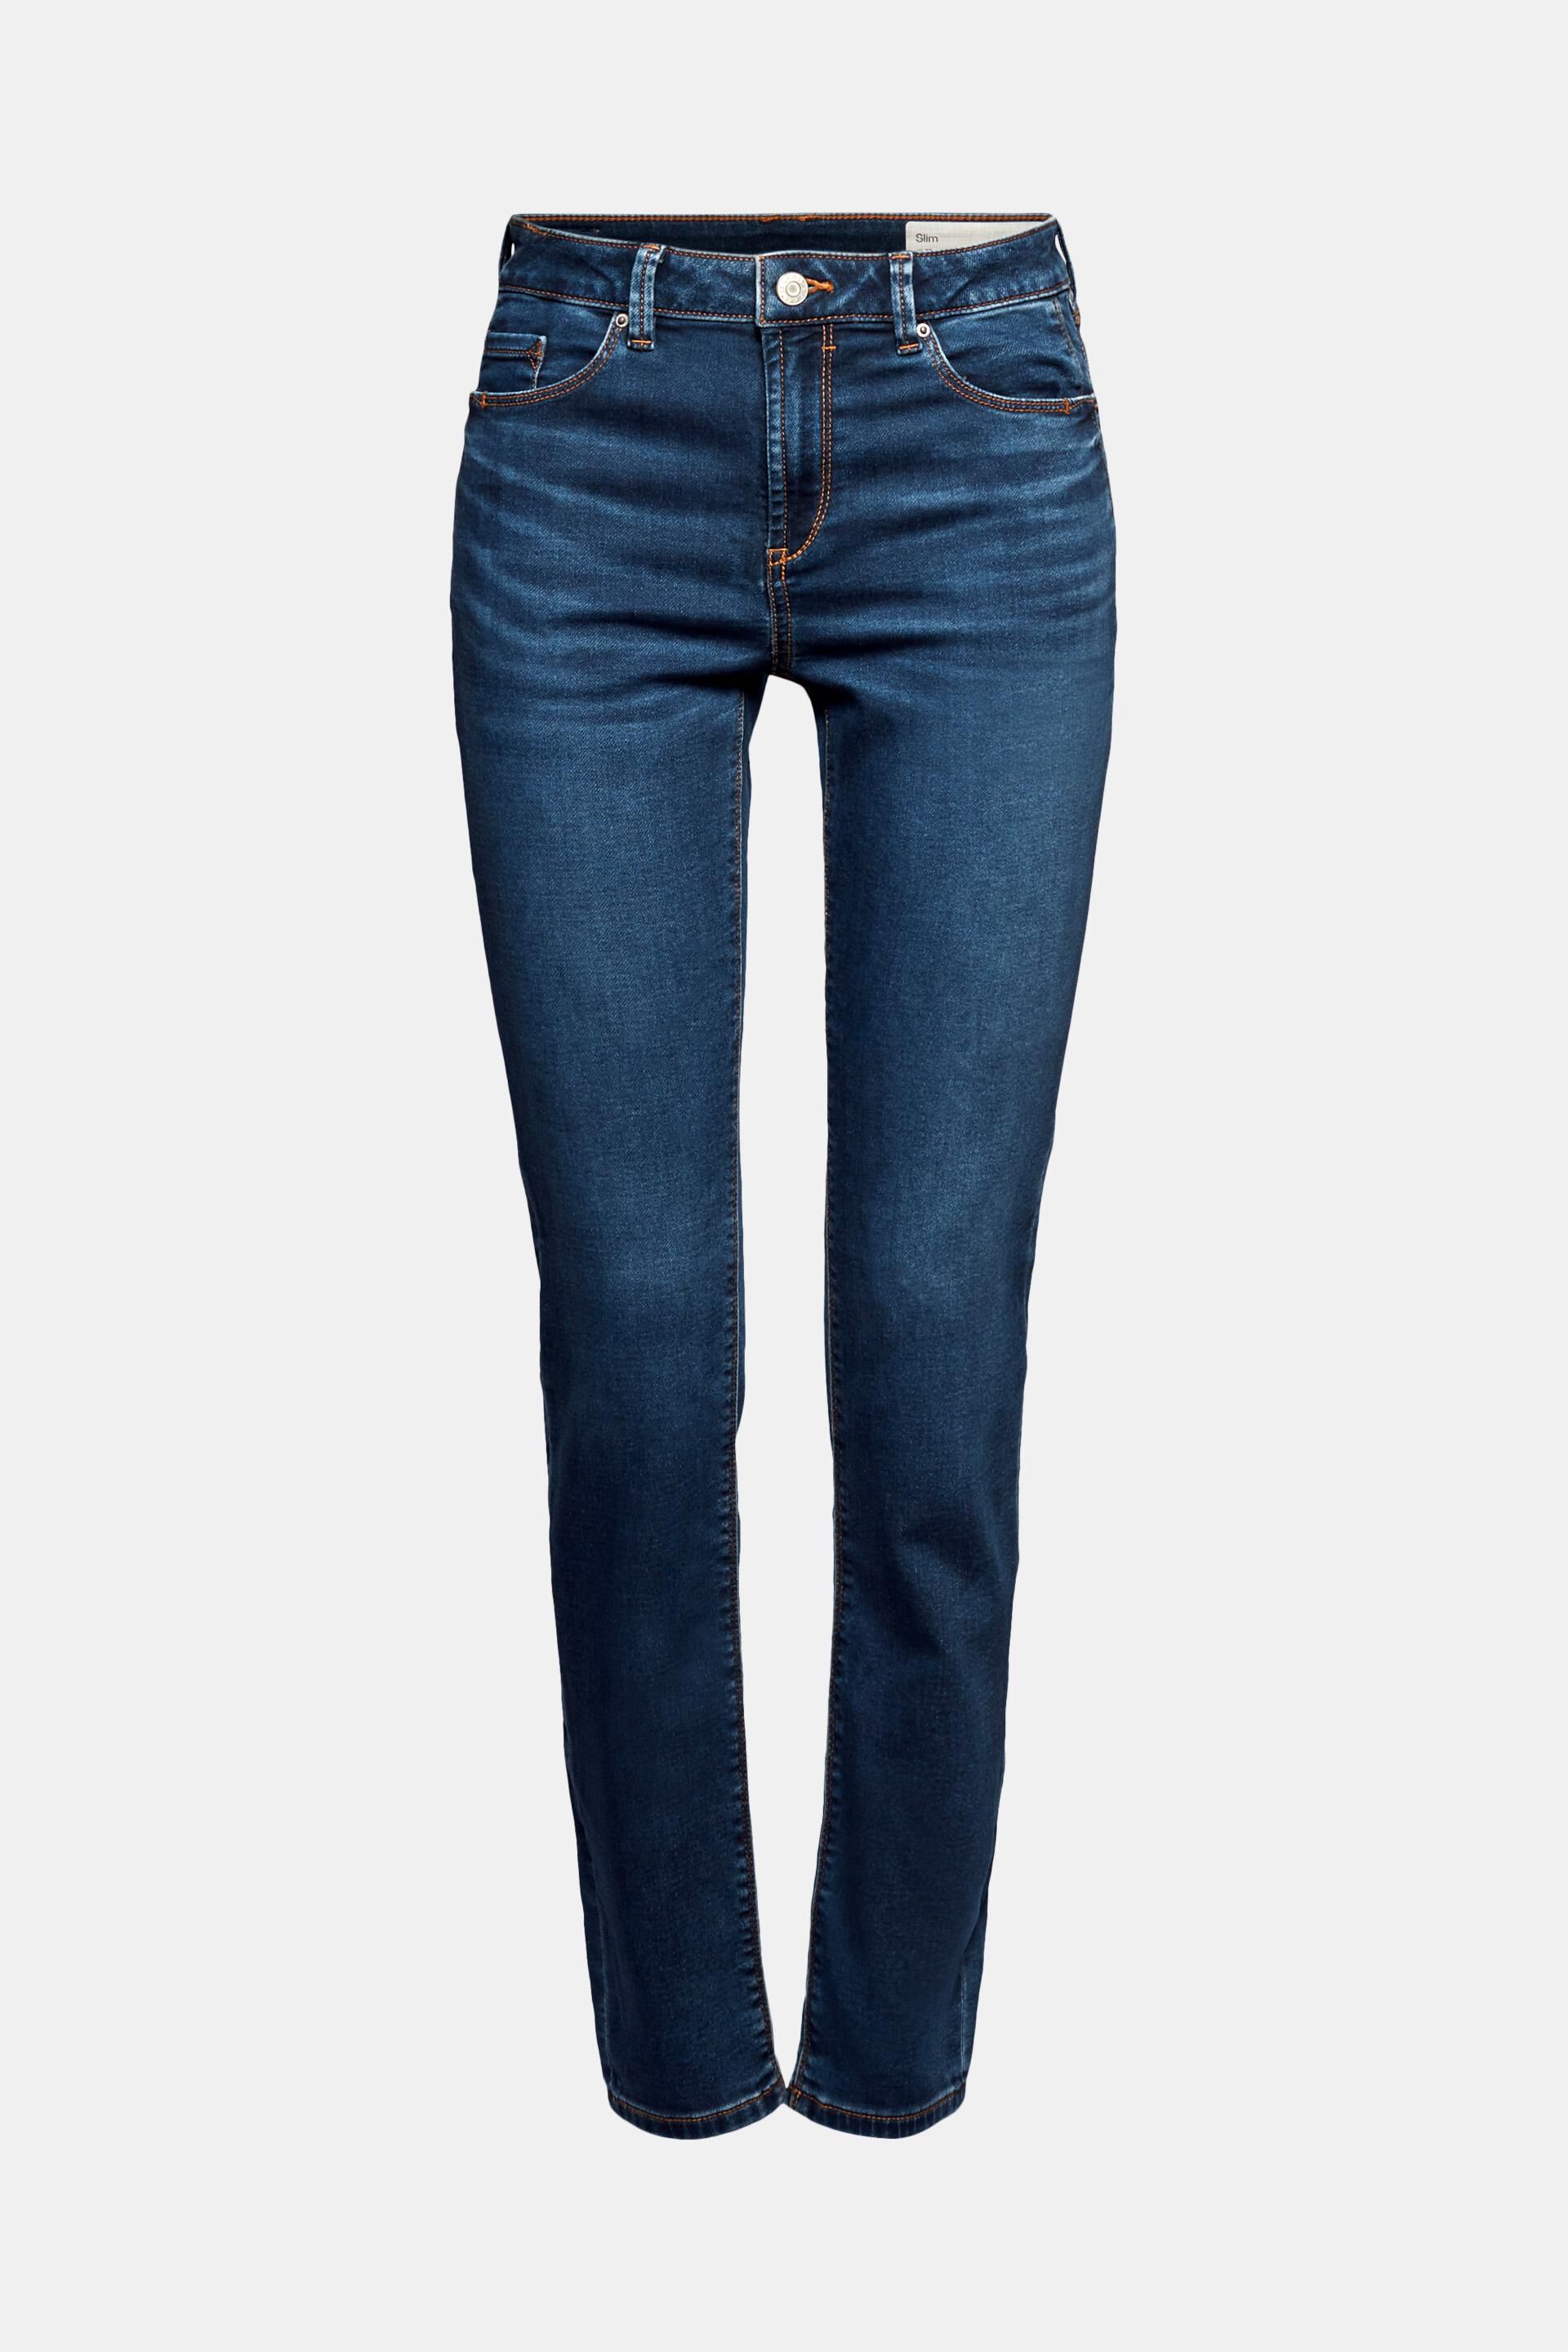 Esprit Denim Slim Jeansbroek 025ee1b052 in het Blauw Dames Kleding voor voor Jeans voor Skinny jeans 